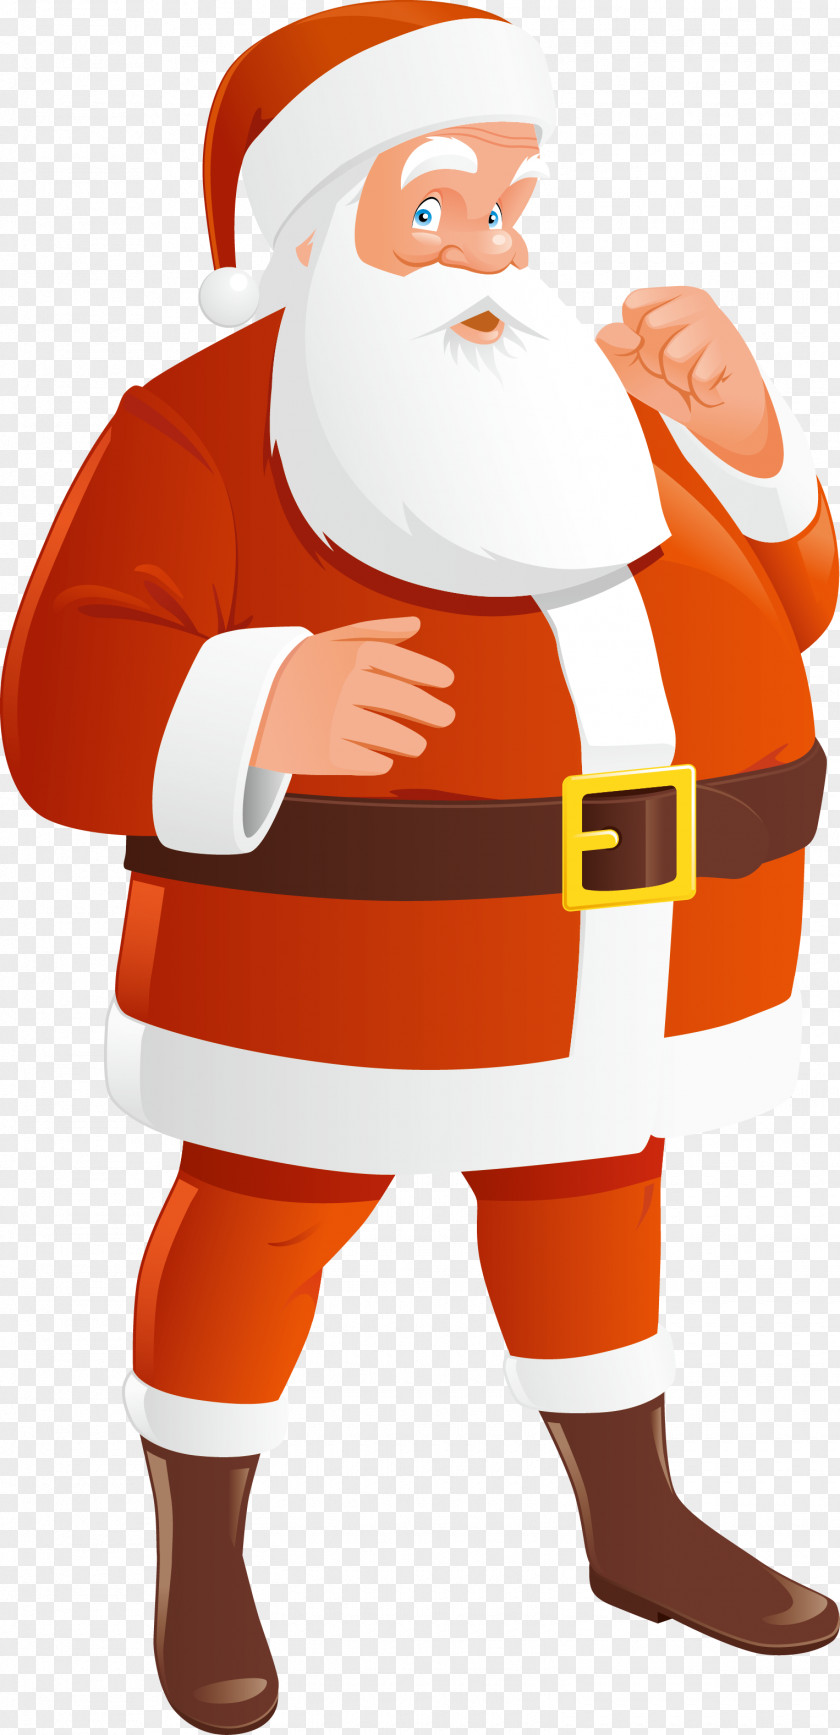 Santa Claus Vector SantaCon Christmas Gift Illustration PNG